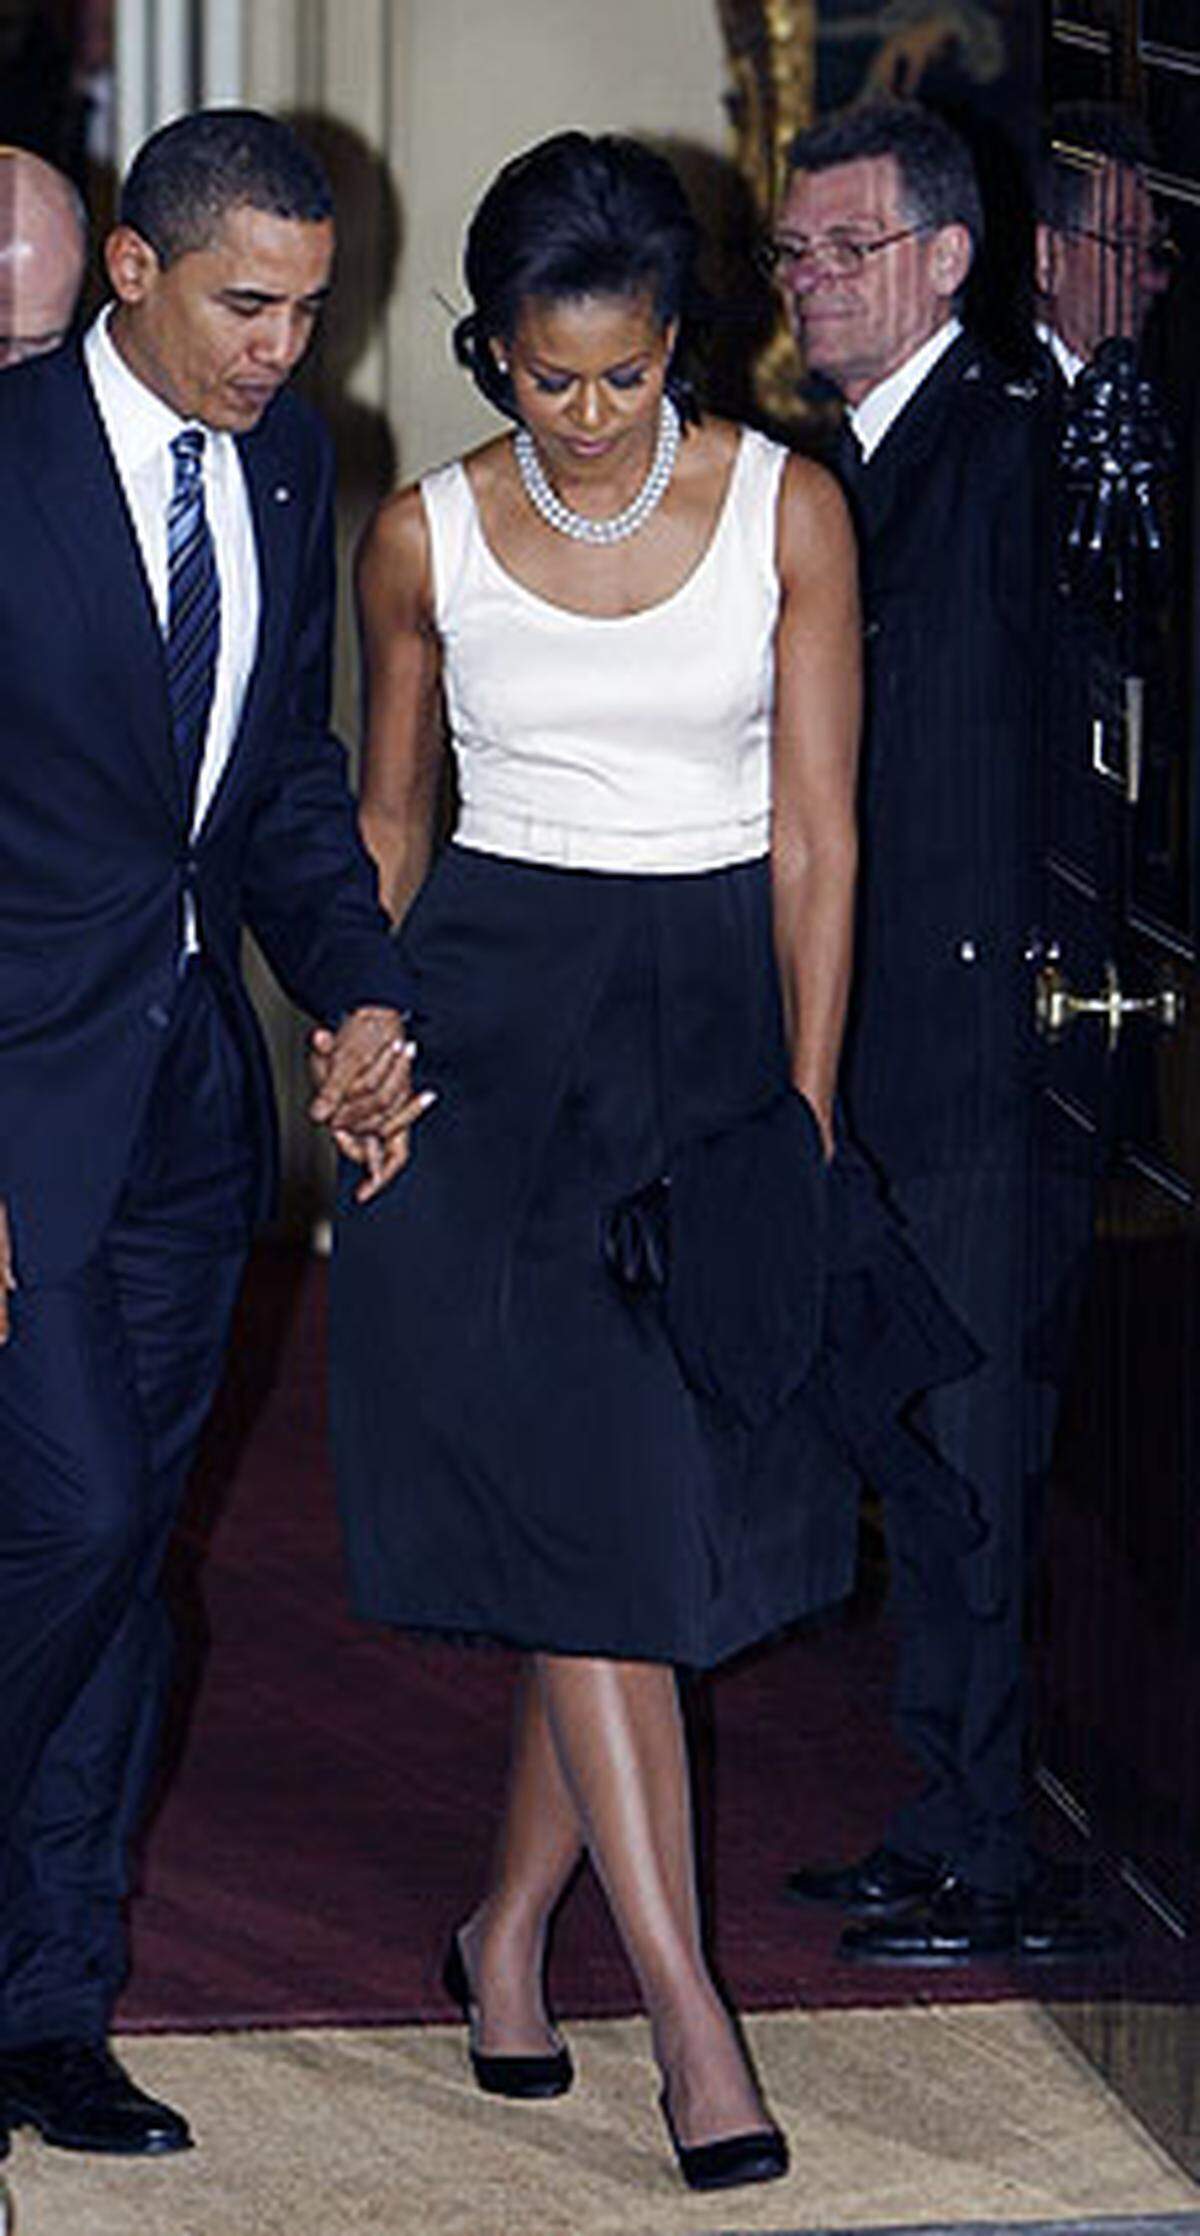 Obamas Outfit sei "frühlingshaft" und "mutig" gewesen und vermittle Optimismus, urteilten Experten.  Nach dem Dinner war der Frühling wieder vorbei - Michelle Obama in einer eleganten aber nicht zugeknöpften Schwarz/Weiß-Kombi. 